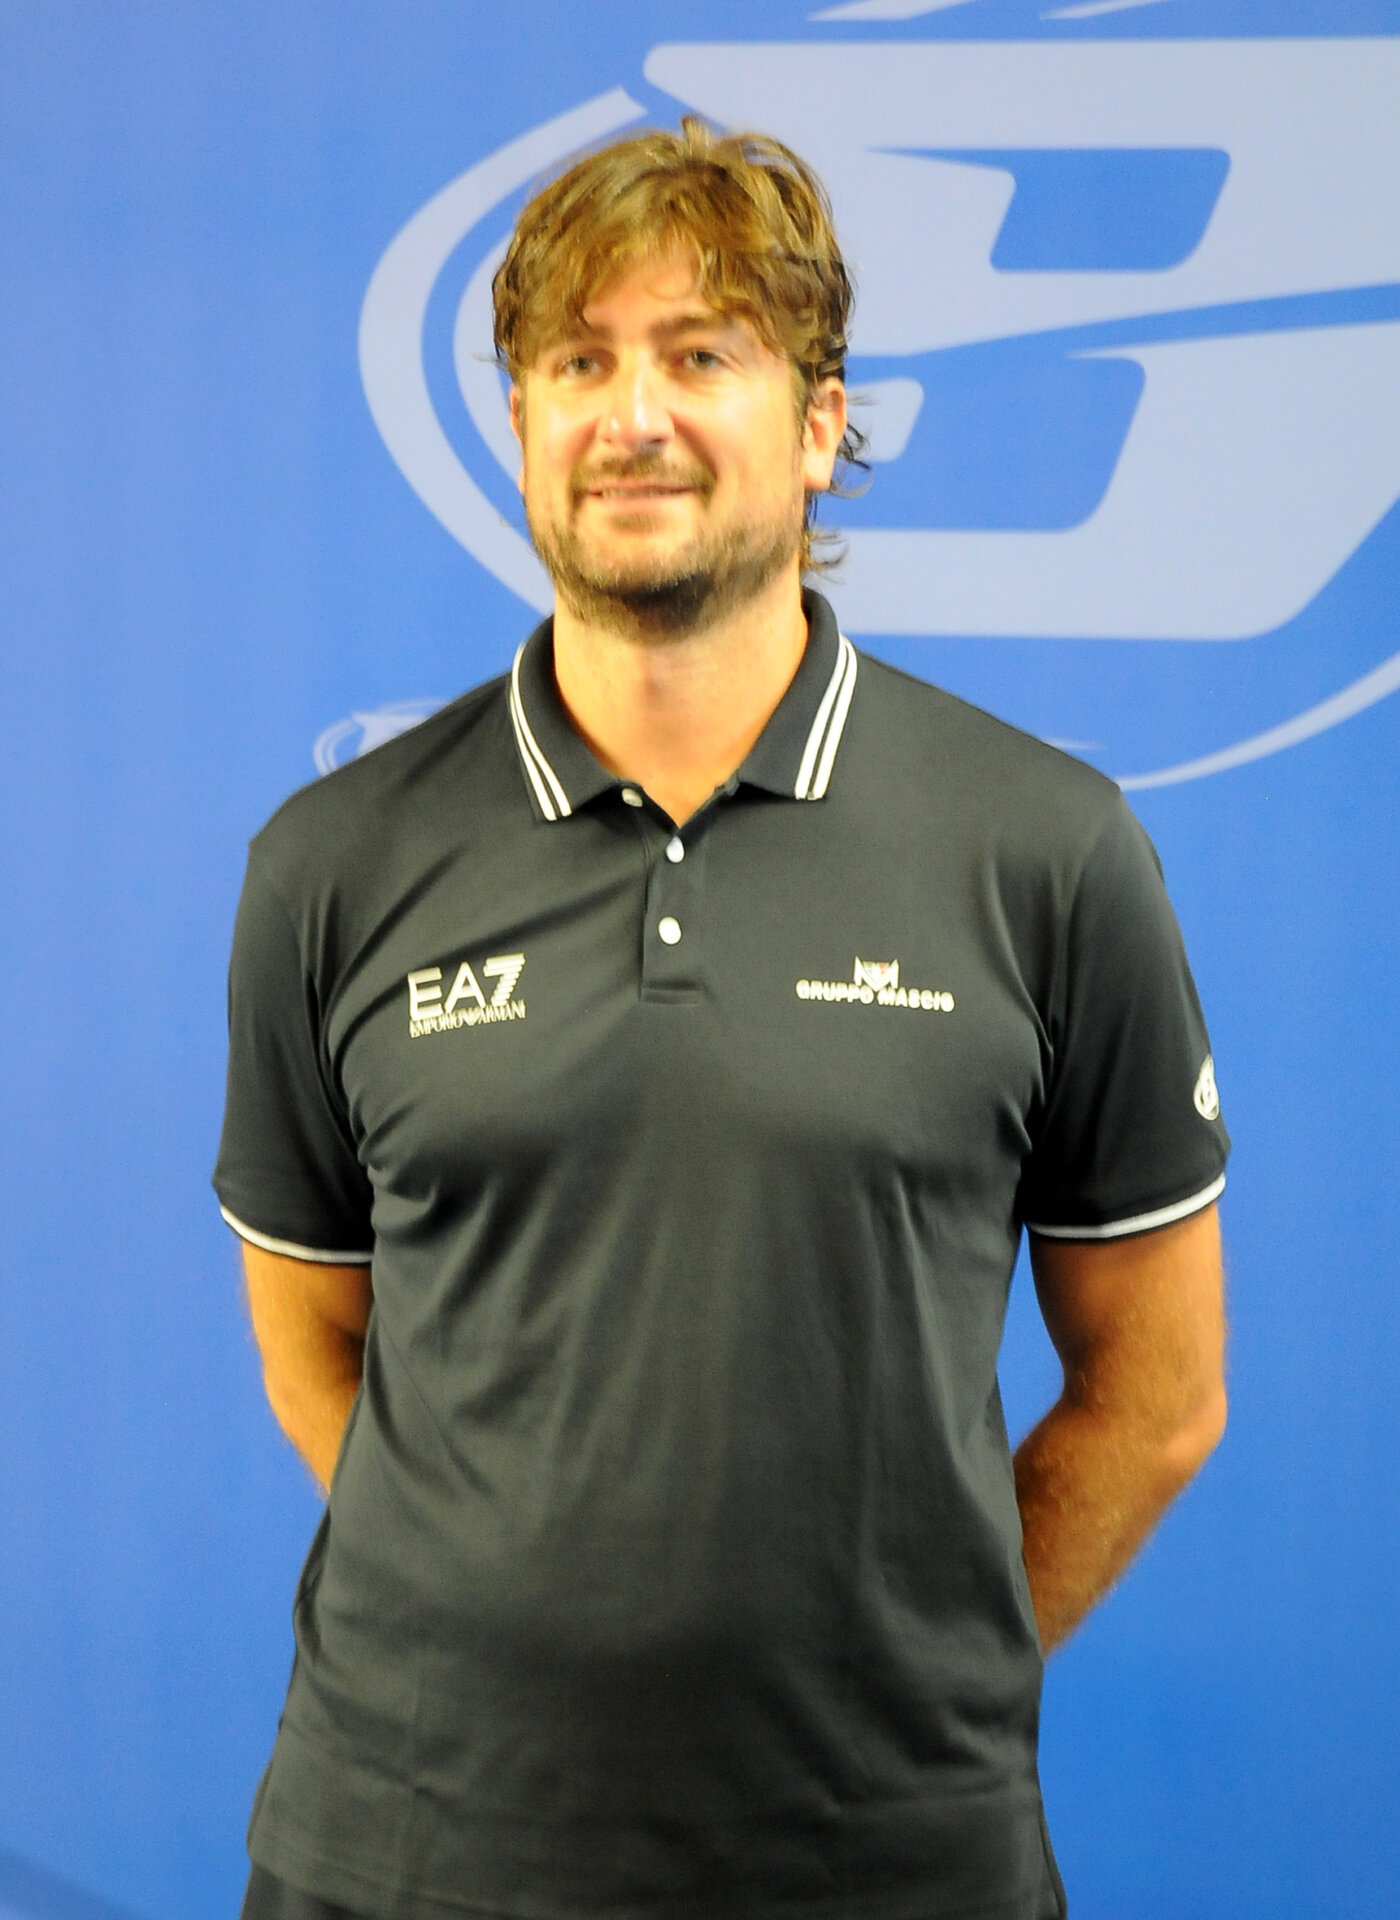 coach Michele Carrea